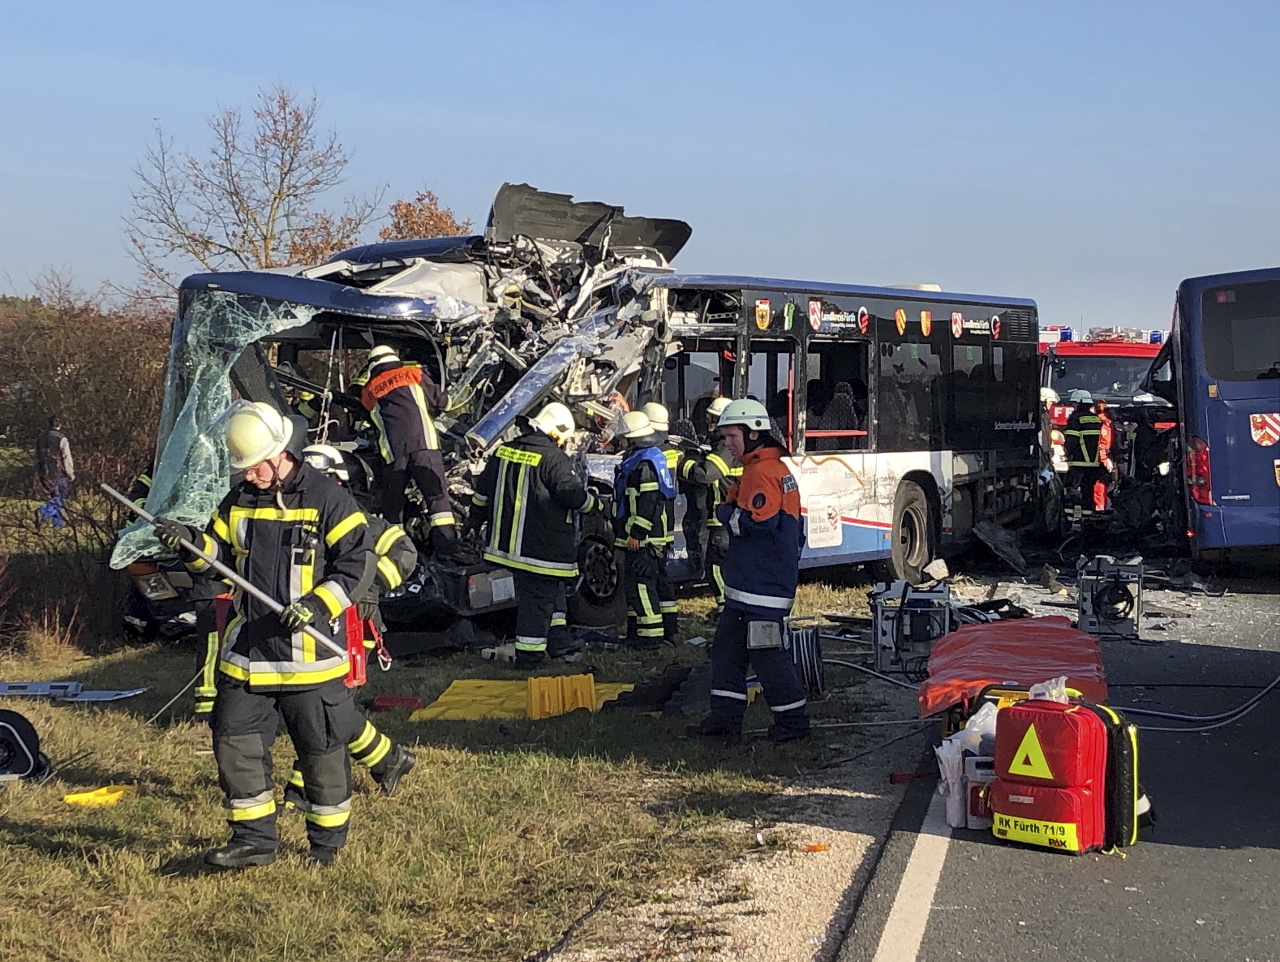 Hasiči pomáhajú odstraňovať nehodu 2 autobusov v Bavorsku.